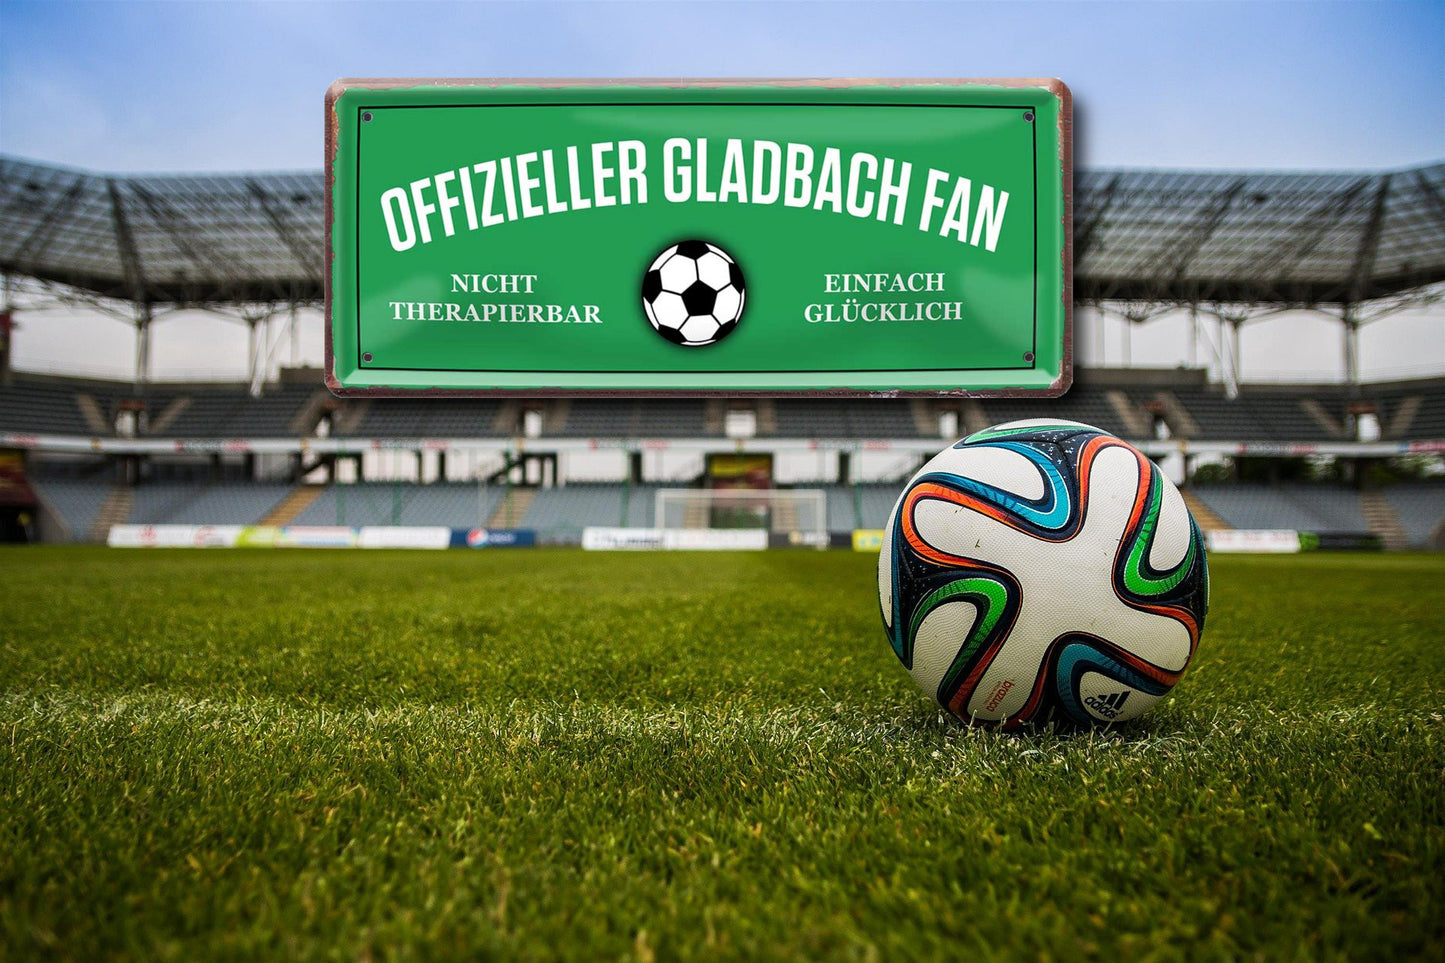 Blechschilder ''Fußball 4 von 5'' Dortmund Freiburg Köln Mönchengladbach Pauli uvm 28x12cm